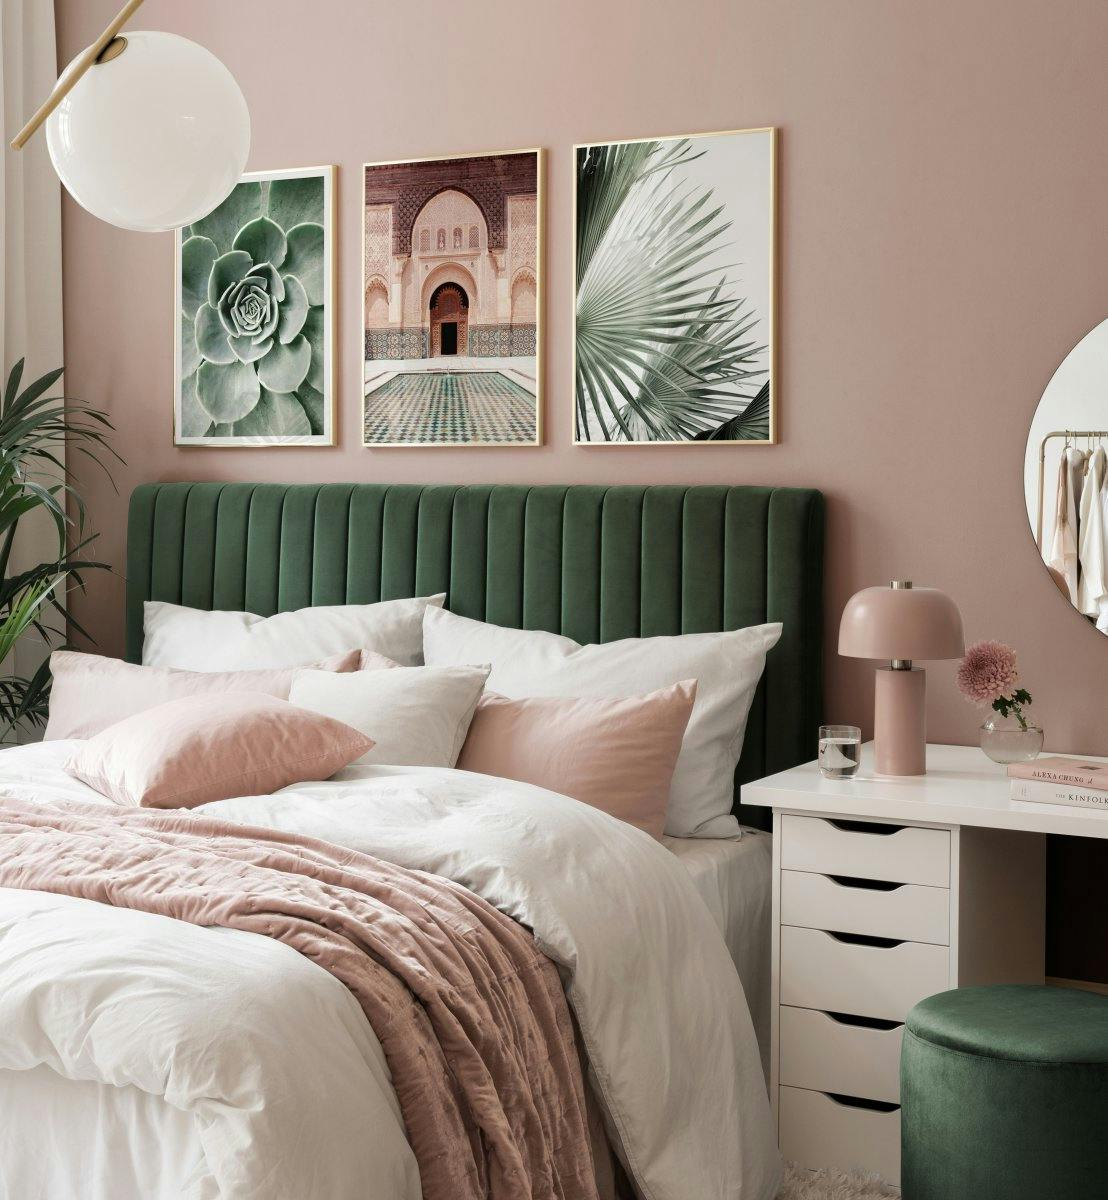 Fotografías de hojas y arquitectura en verde y beige para dormitorio